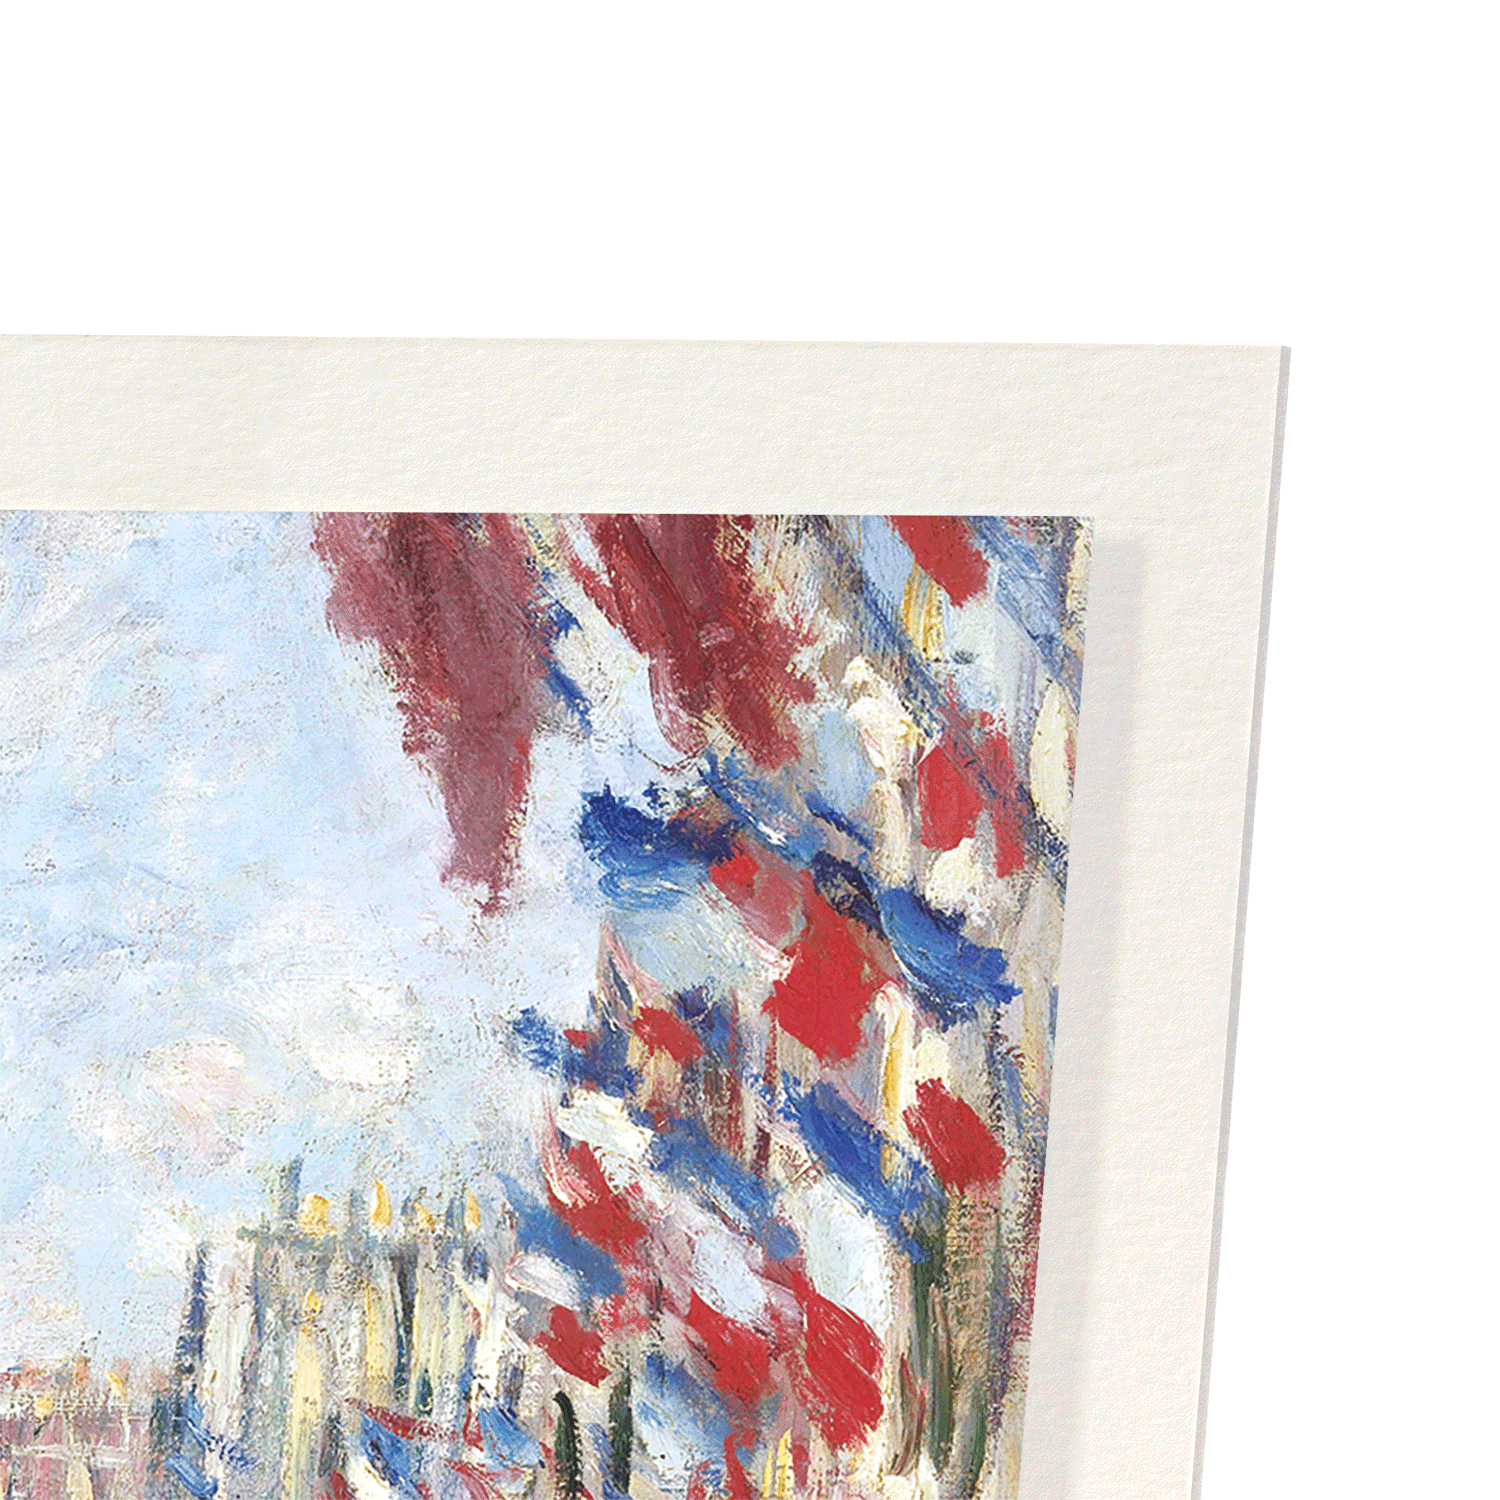 LA RUE MONTORGUEIL IN PARIS BY MONET: Painting Art Print